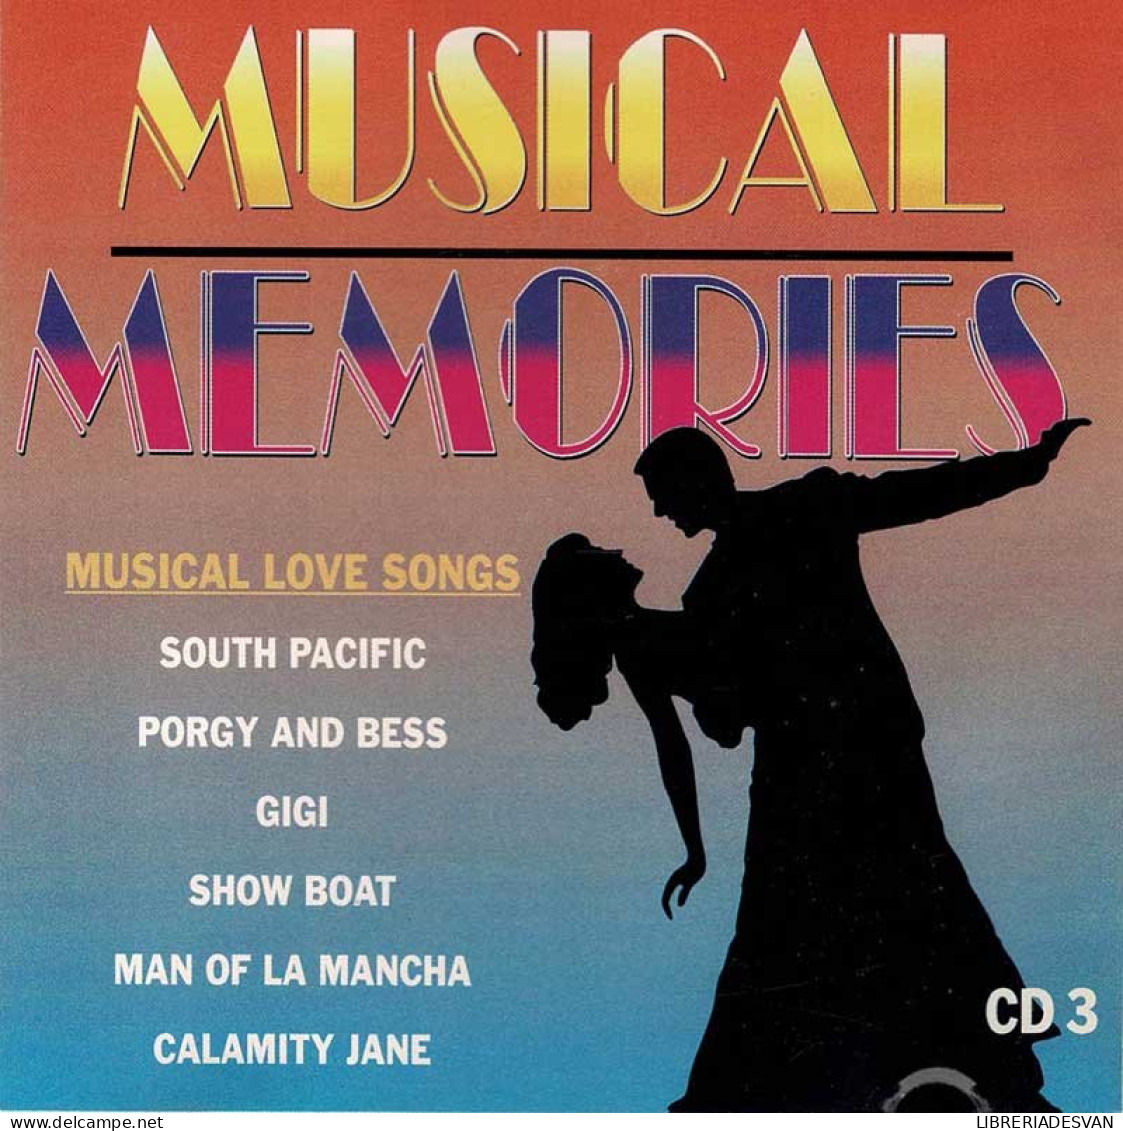 Musical Memories. CD 3 - Filmmusik